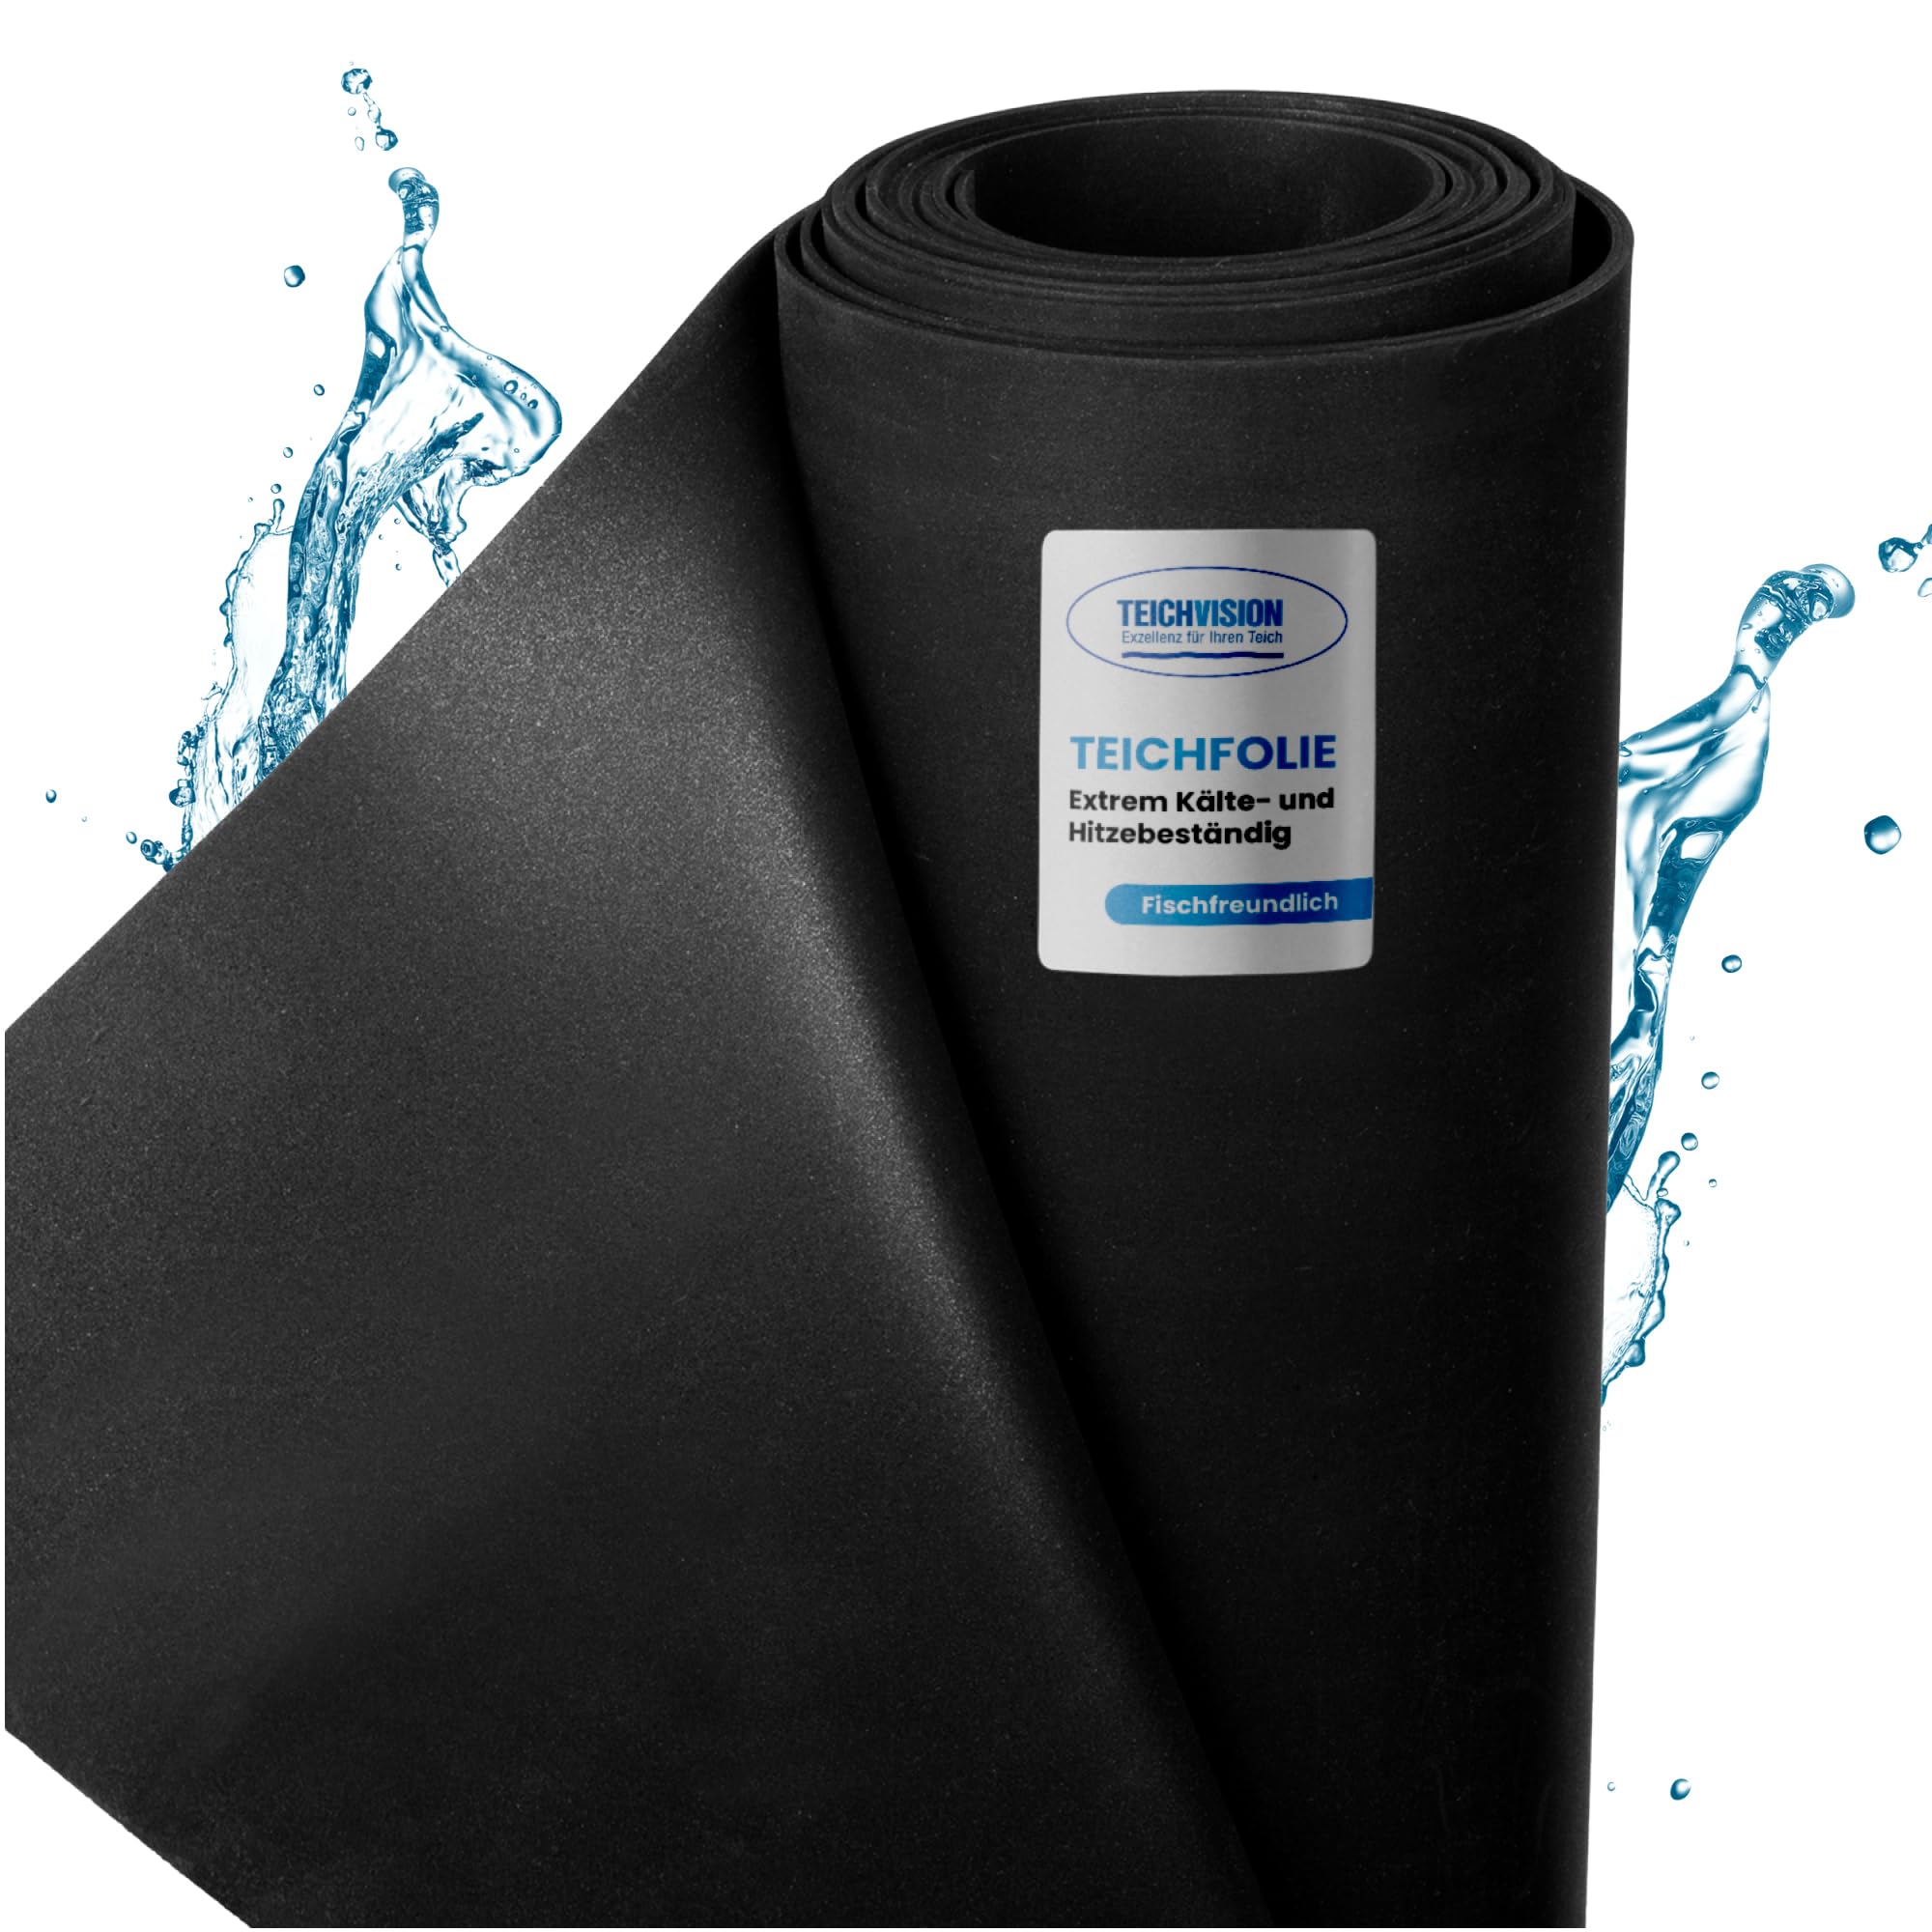 TeichVision - Premium EPDM Teichfolie Stärke 1 mm - 4,57 m x 0,5 m/naturgerechte EPDM Folie schwarz - besonders langlebig/auch geeignet als Hochbeet Folie wasserdicht